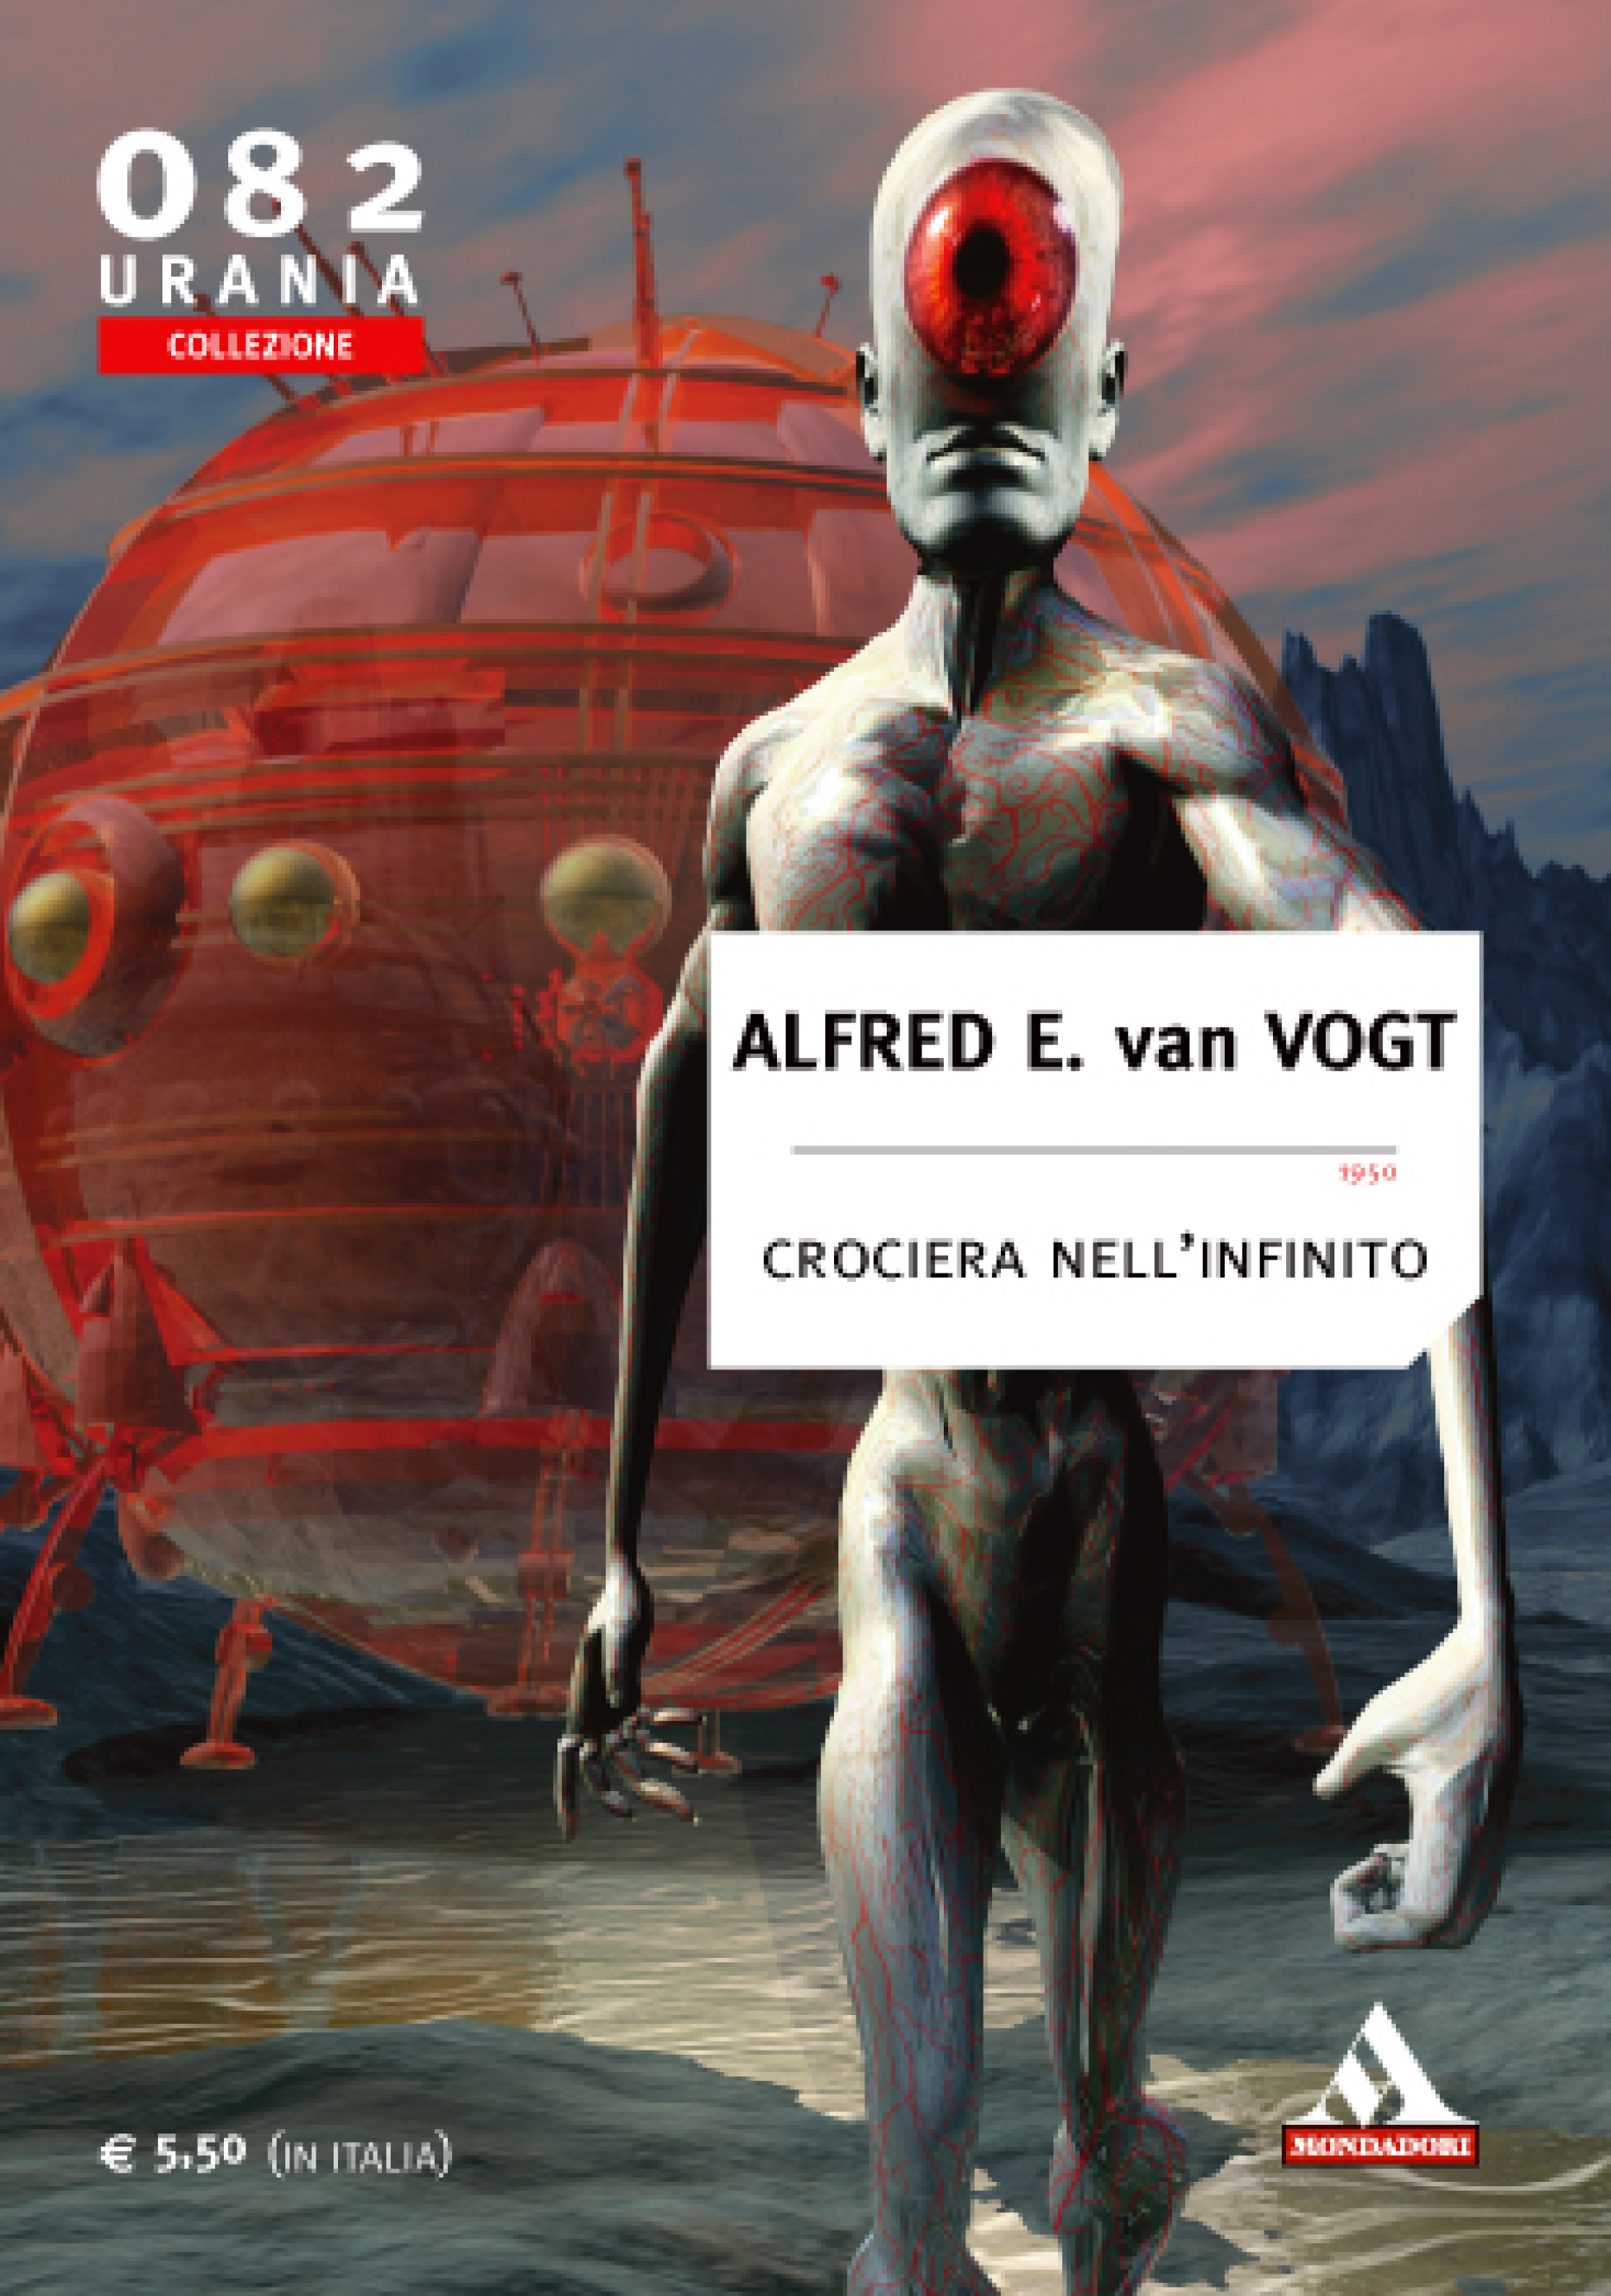 Alfred E. van Vogt – Crociera nell’Infinito